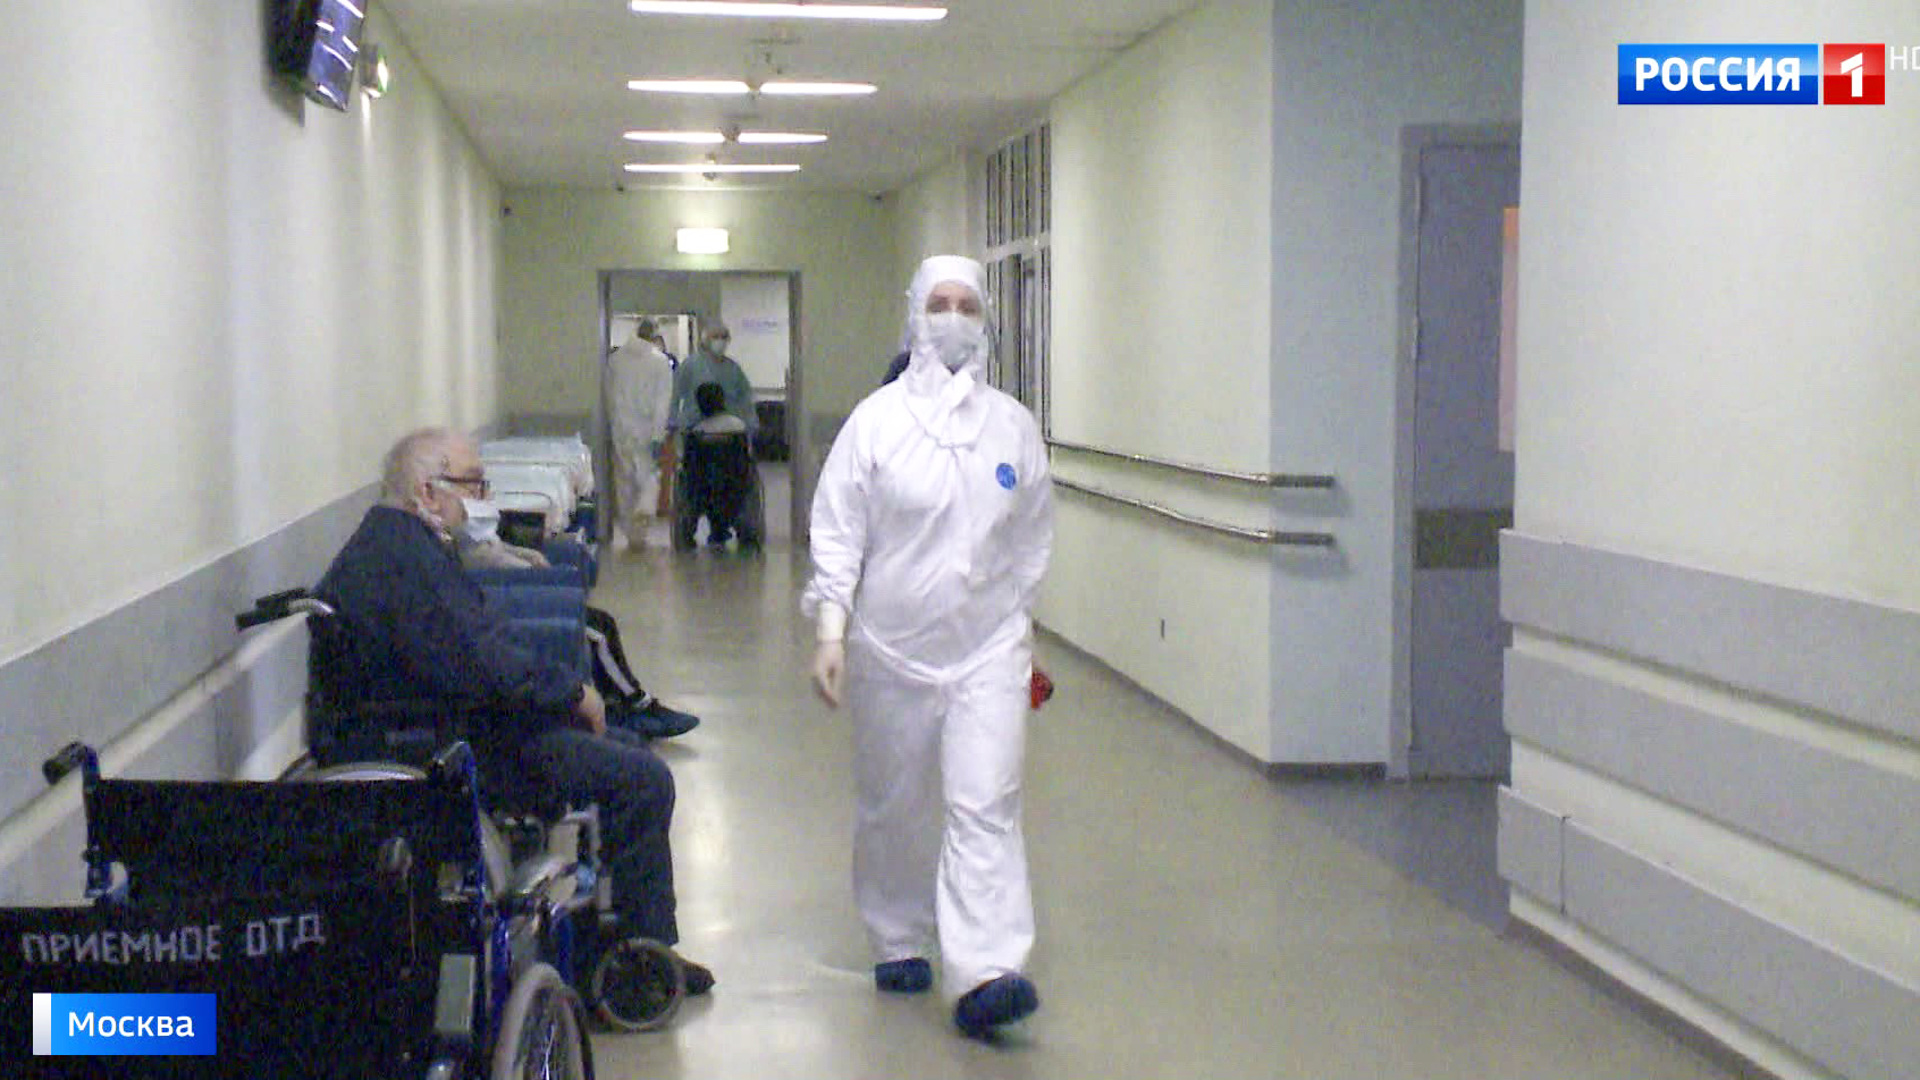 боткинская больница москва онкологическое отделение врачи